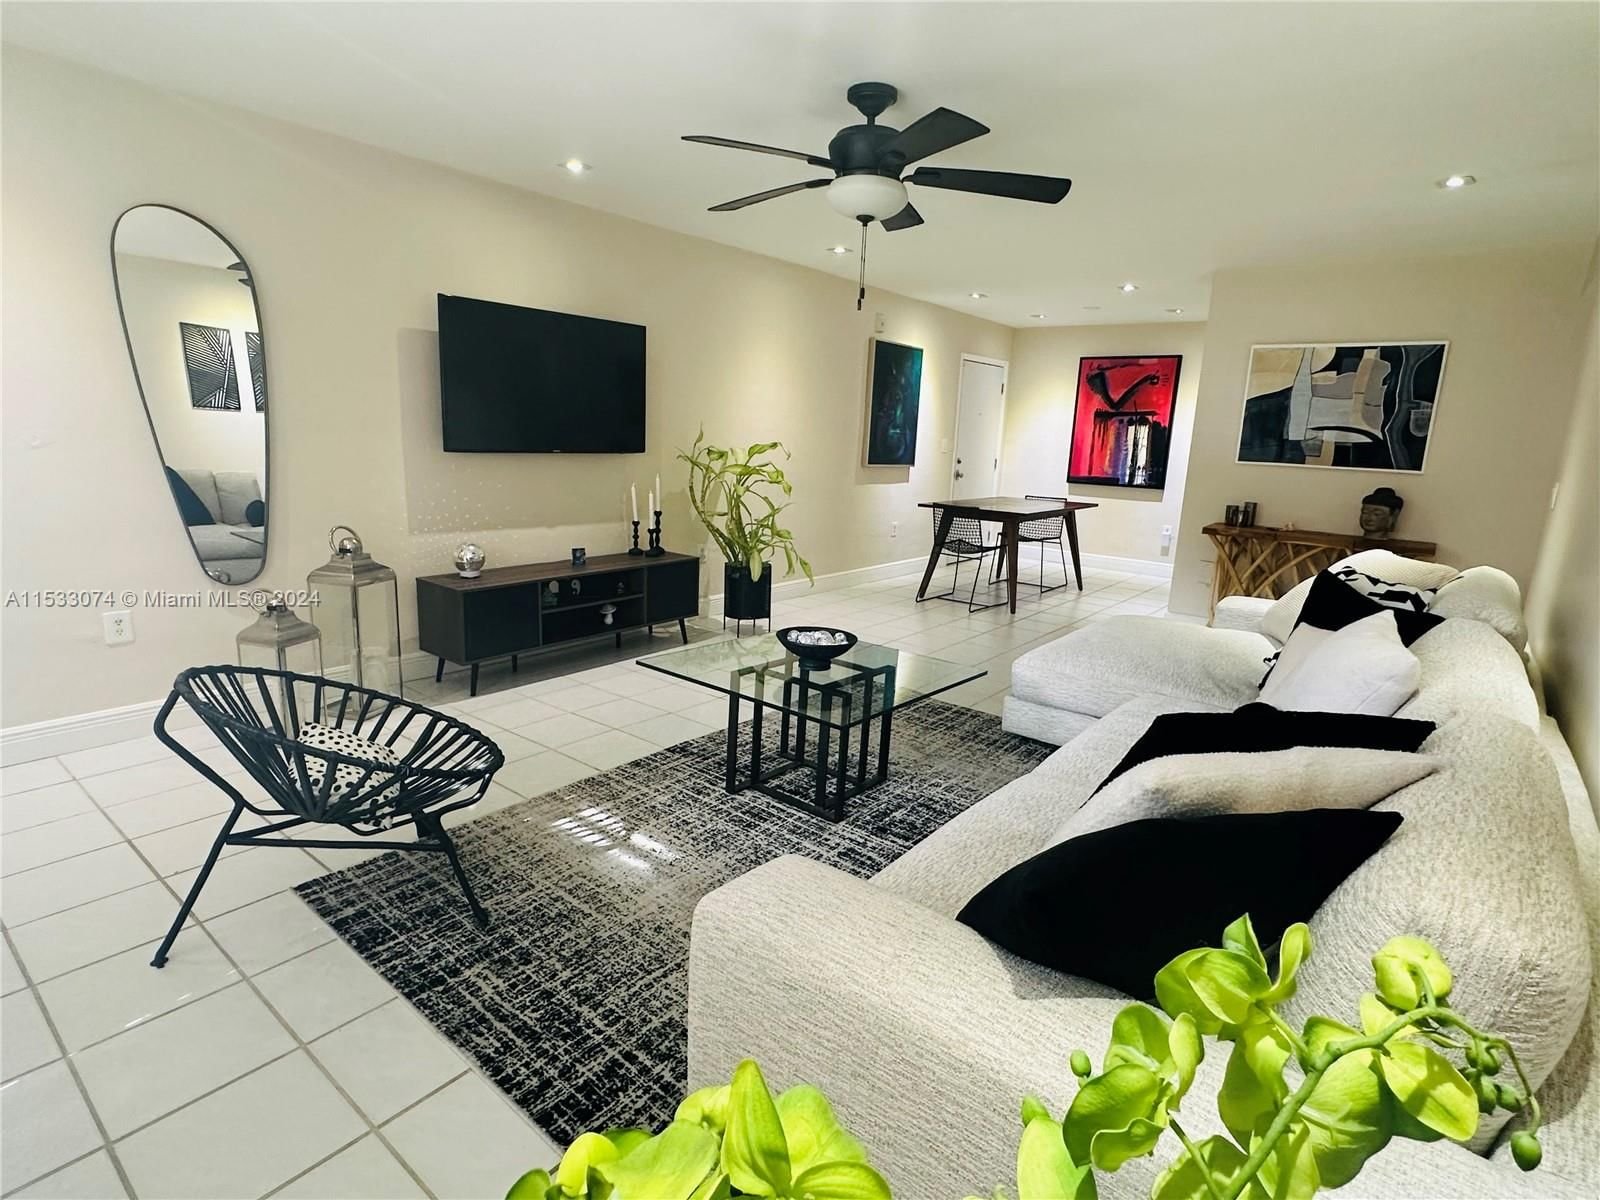 Real estate property located at 9404 77th Ave M2, Miami-Dade County, KINGSTON SQUARE CONDO, Miami, FL